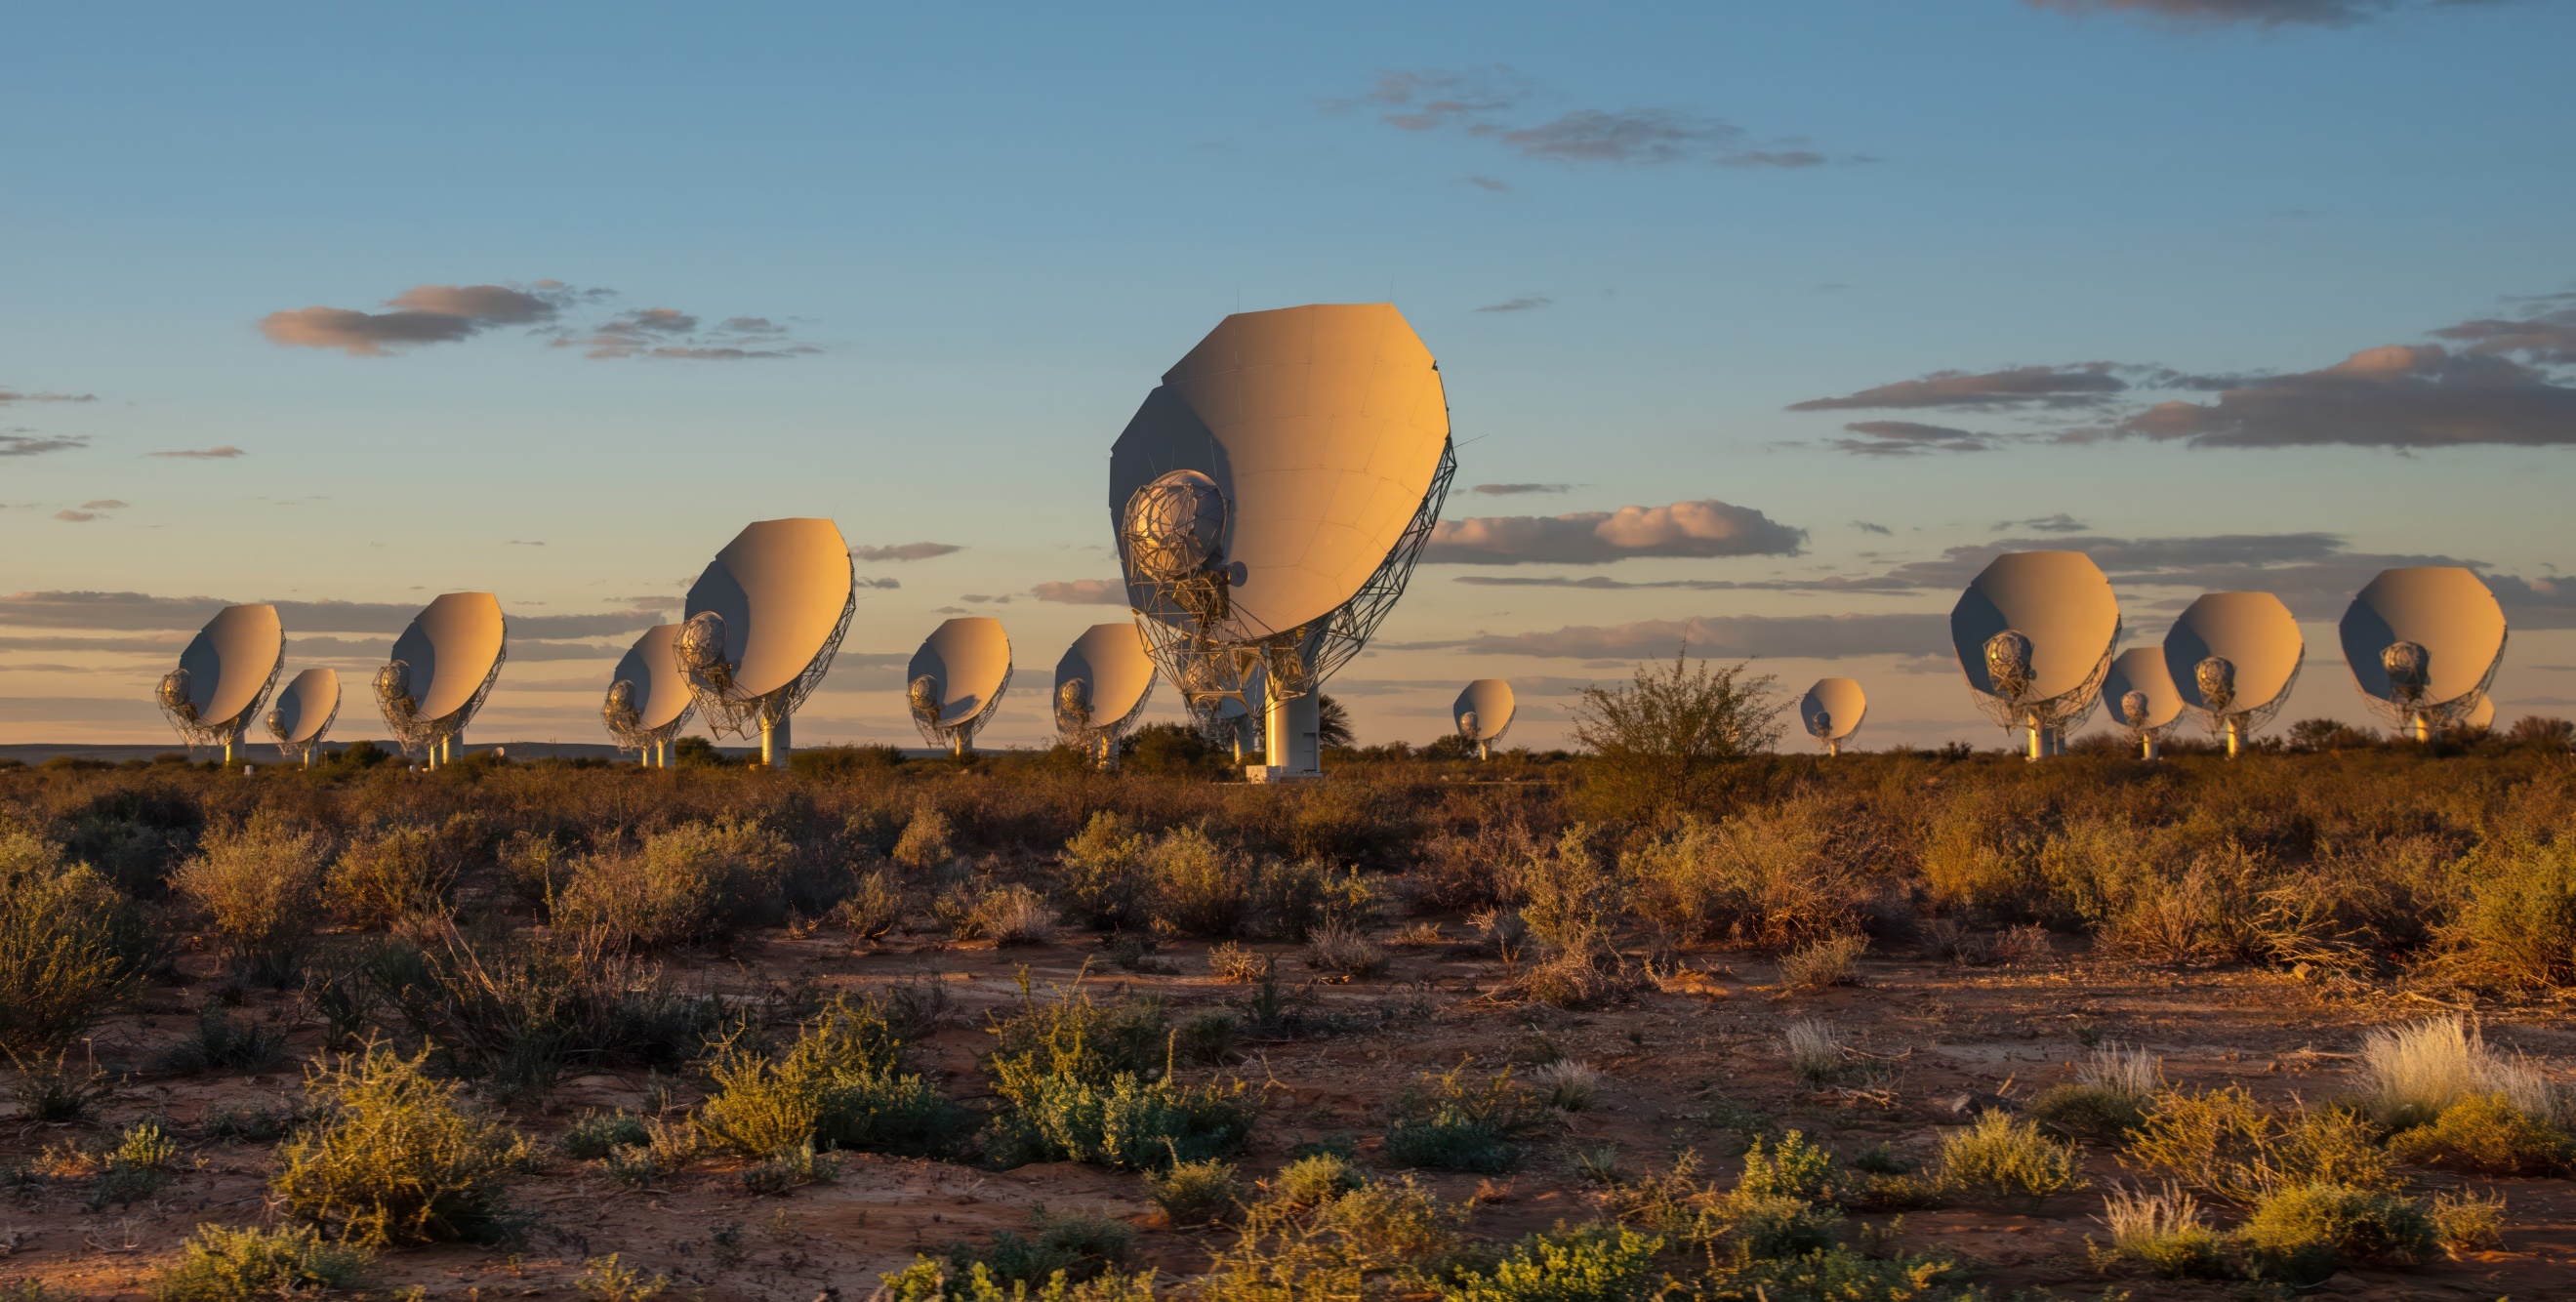 Ekip, Güney Afrika'daki Karoo yarı çölünde bulunan hassas MeerKAT radyo teleskobunu kullandı. İki yıldız birbirinden 8 milyon km uzaklıkta ve her 7 günde bir birbirlerinin etrafında dönüyorlar. Kaynak: Daniëlle Futselaar (artsource.nl)